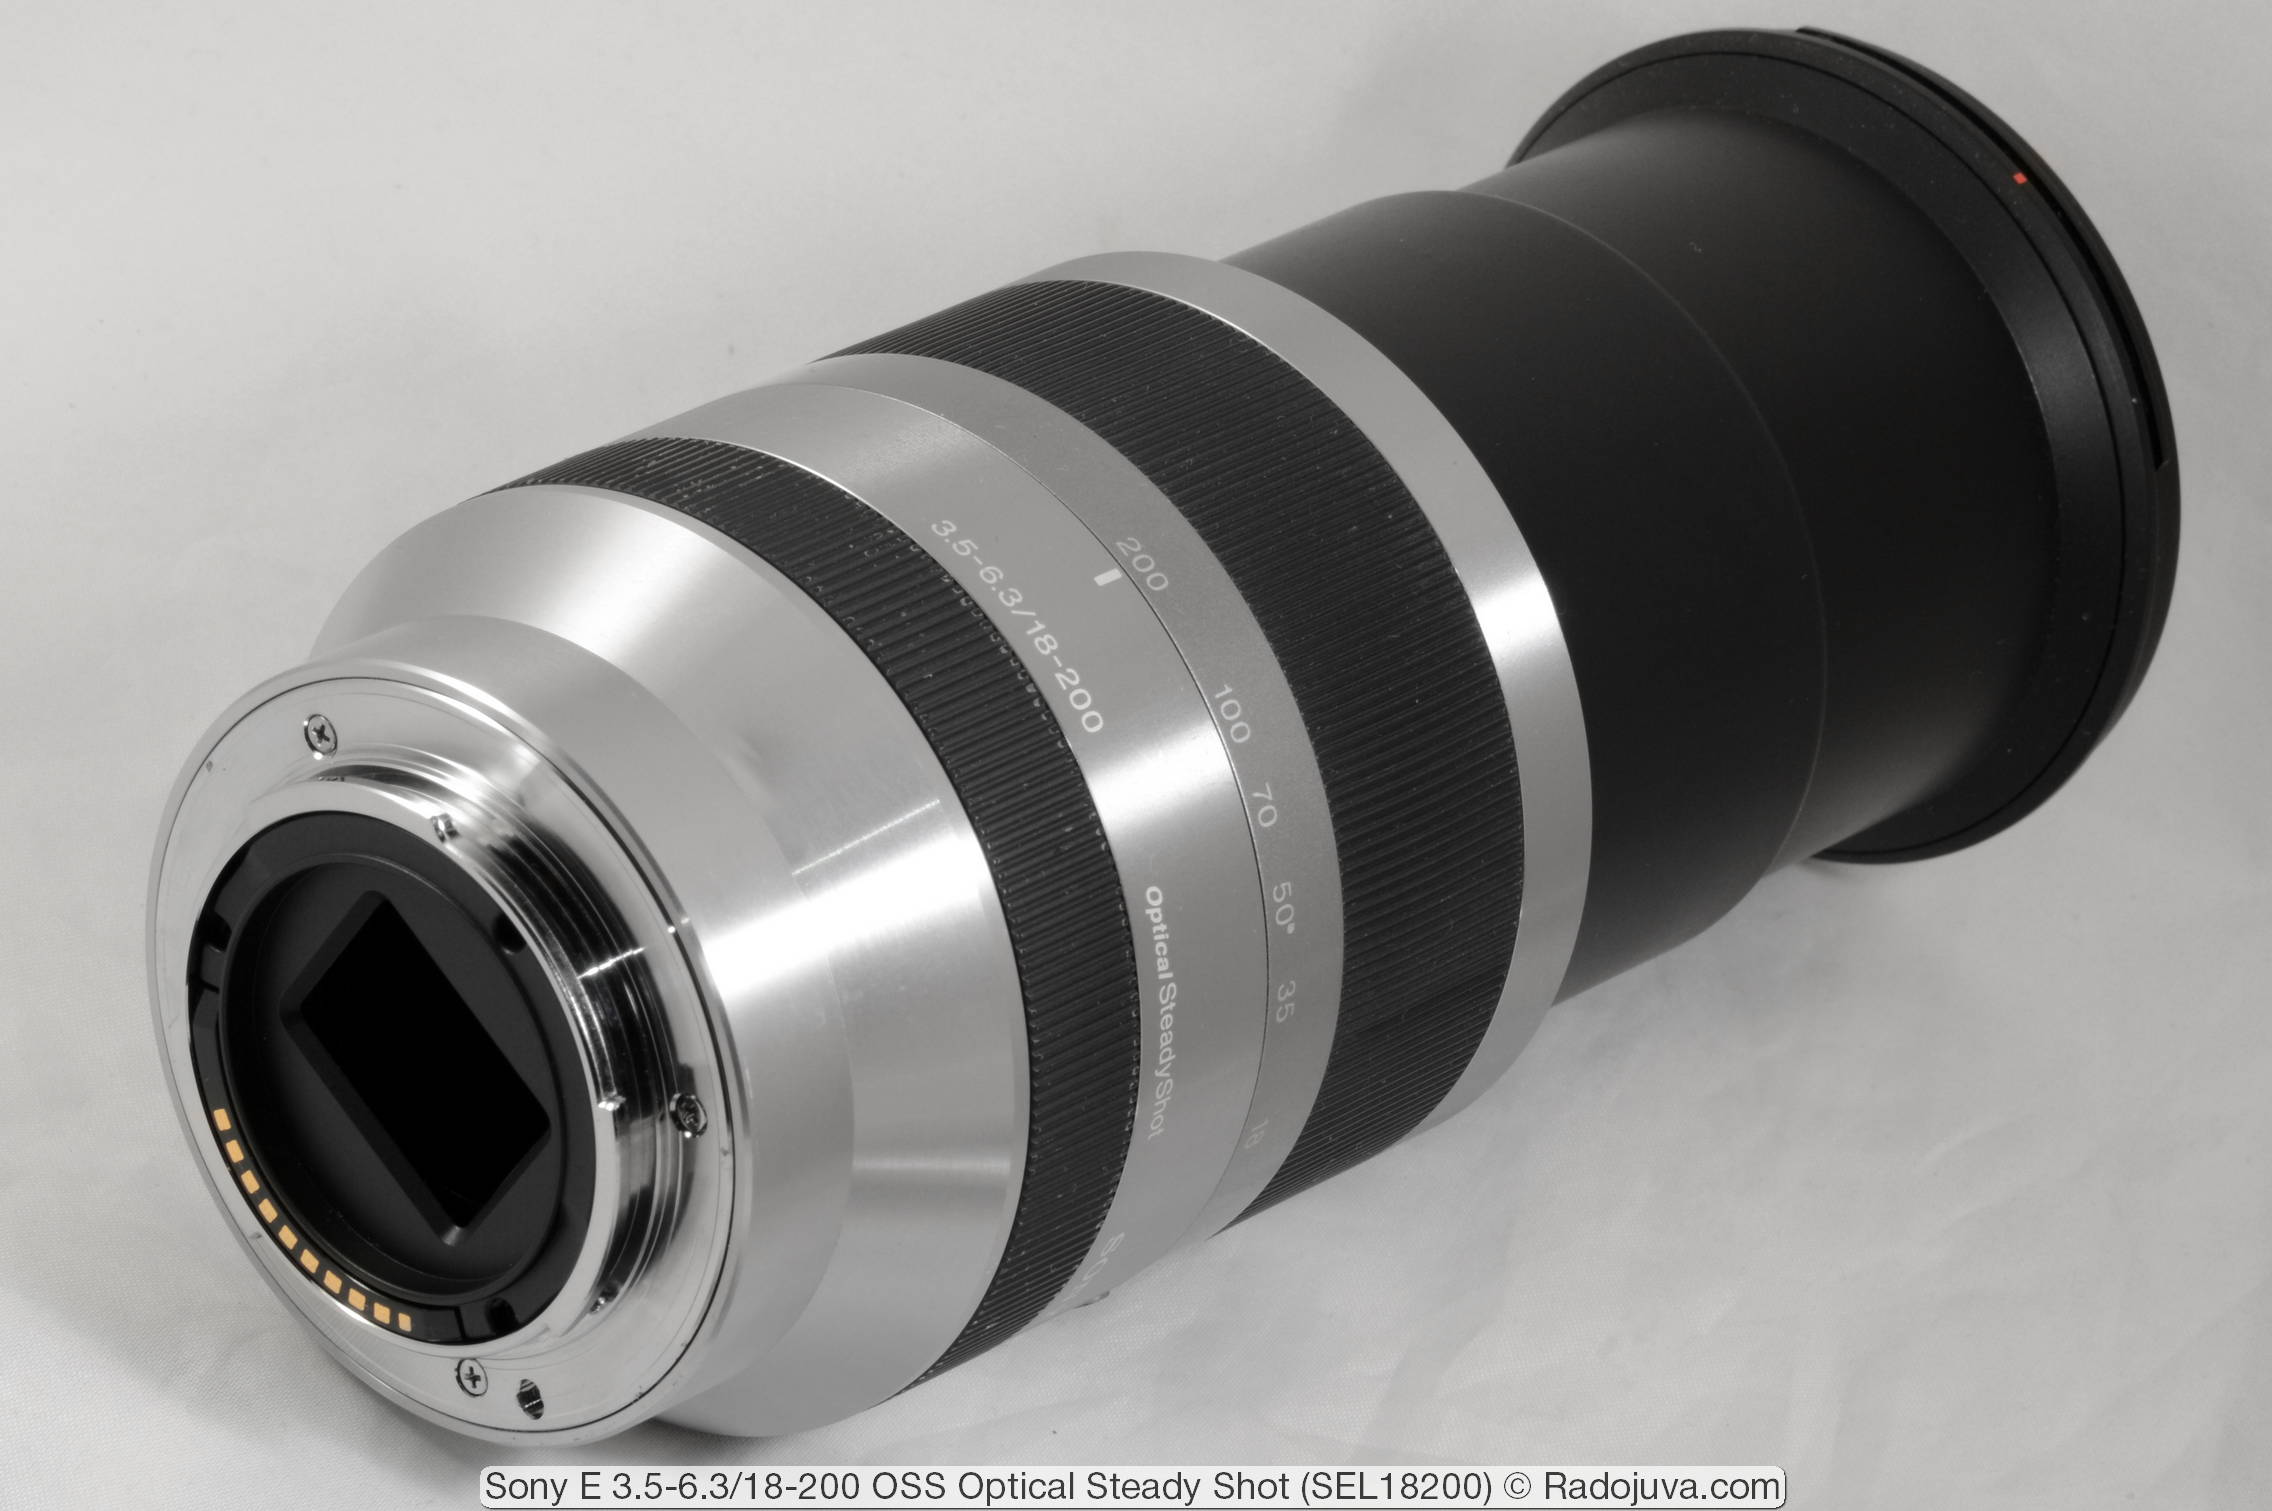 Lens Hood Universal 67mm black for Sony E 18-200 mm F3.5-6.3 PZ OSS 